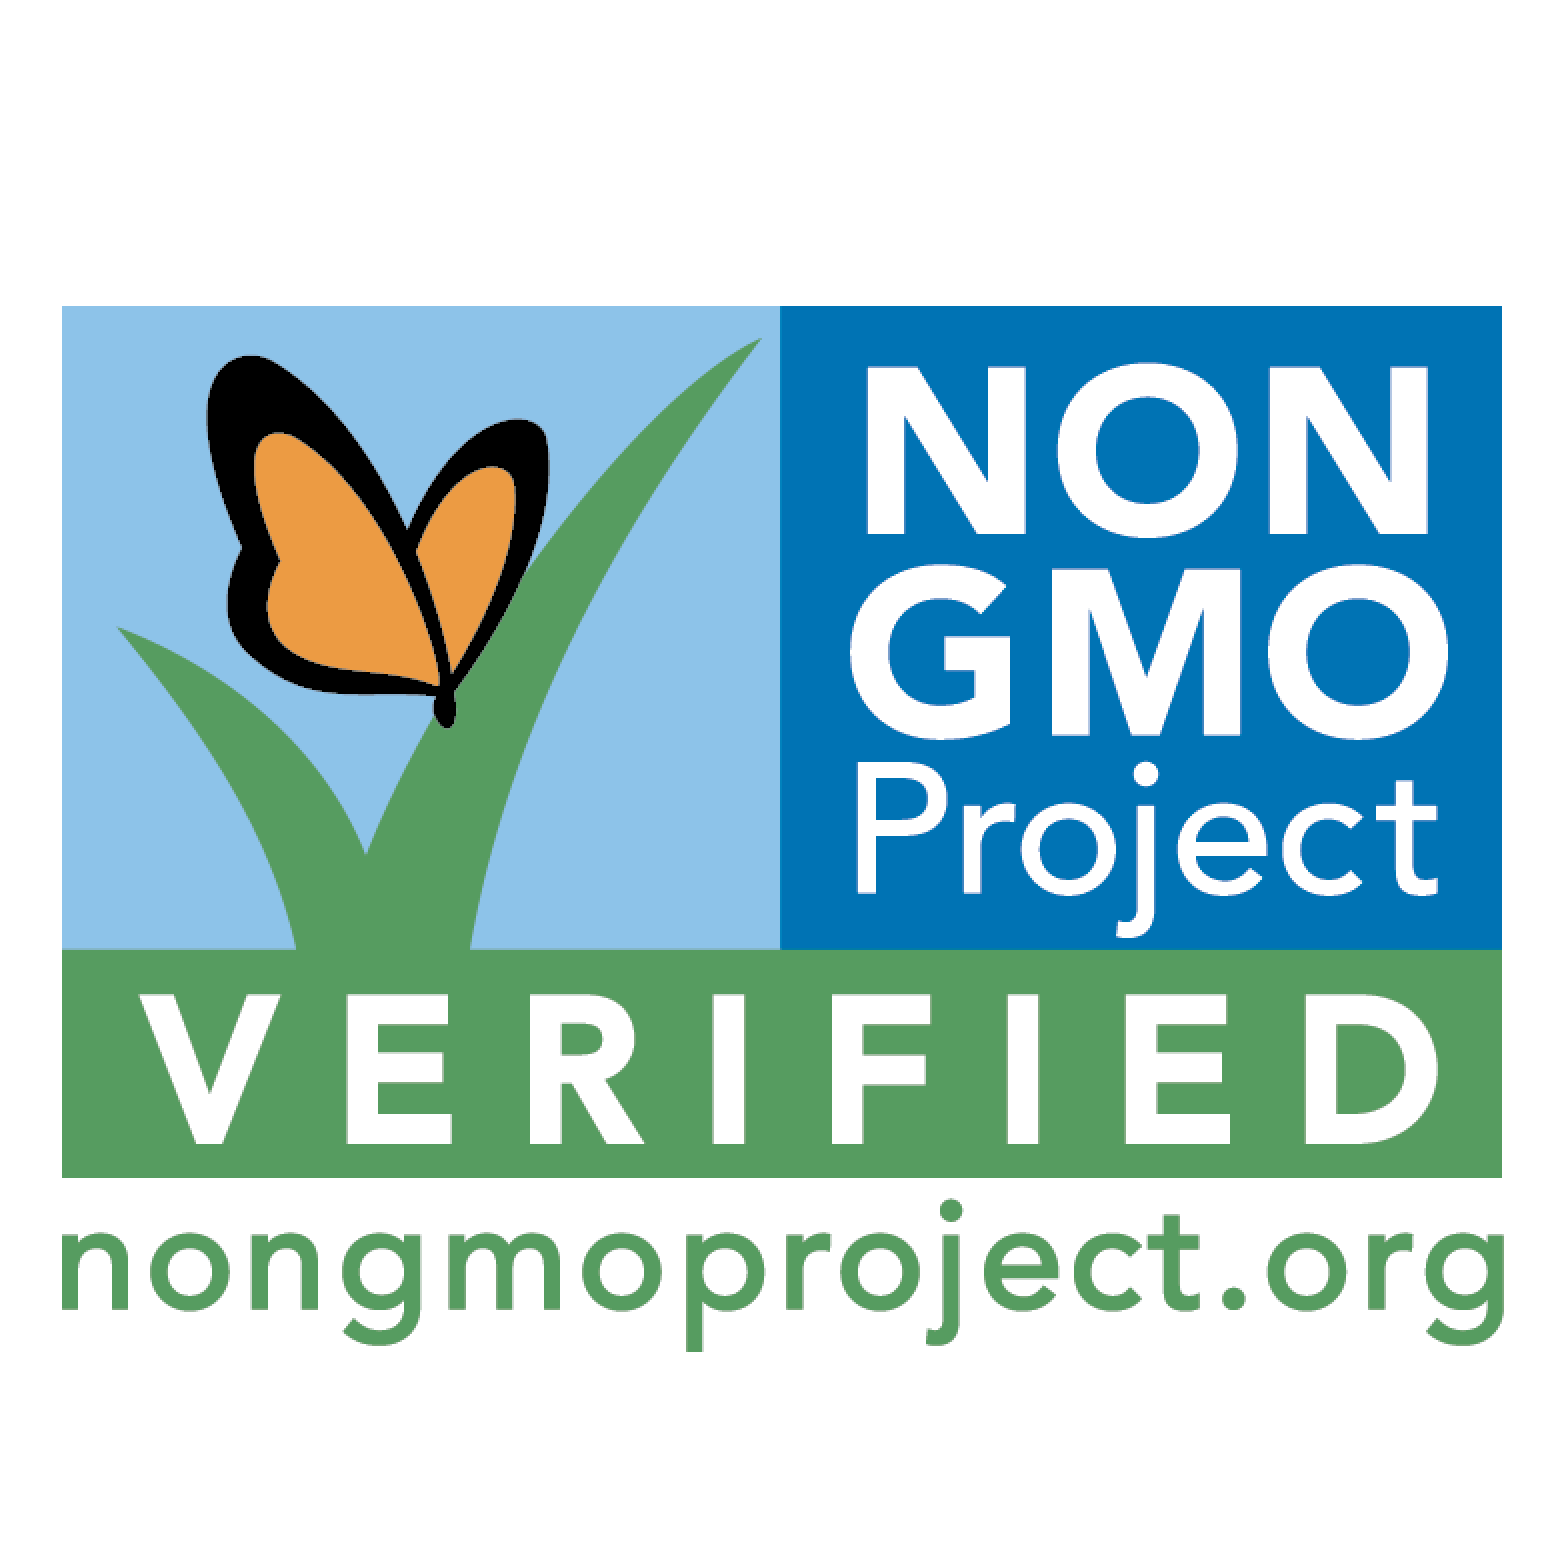 Non-GMO Certified